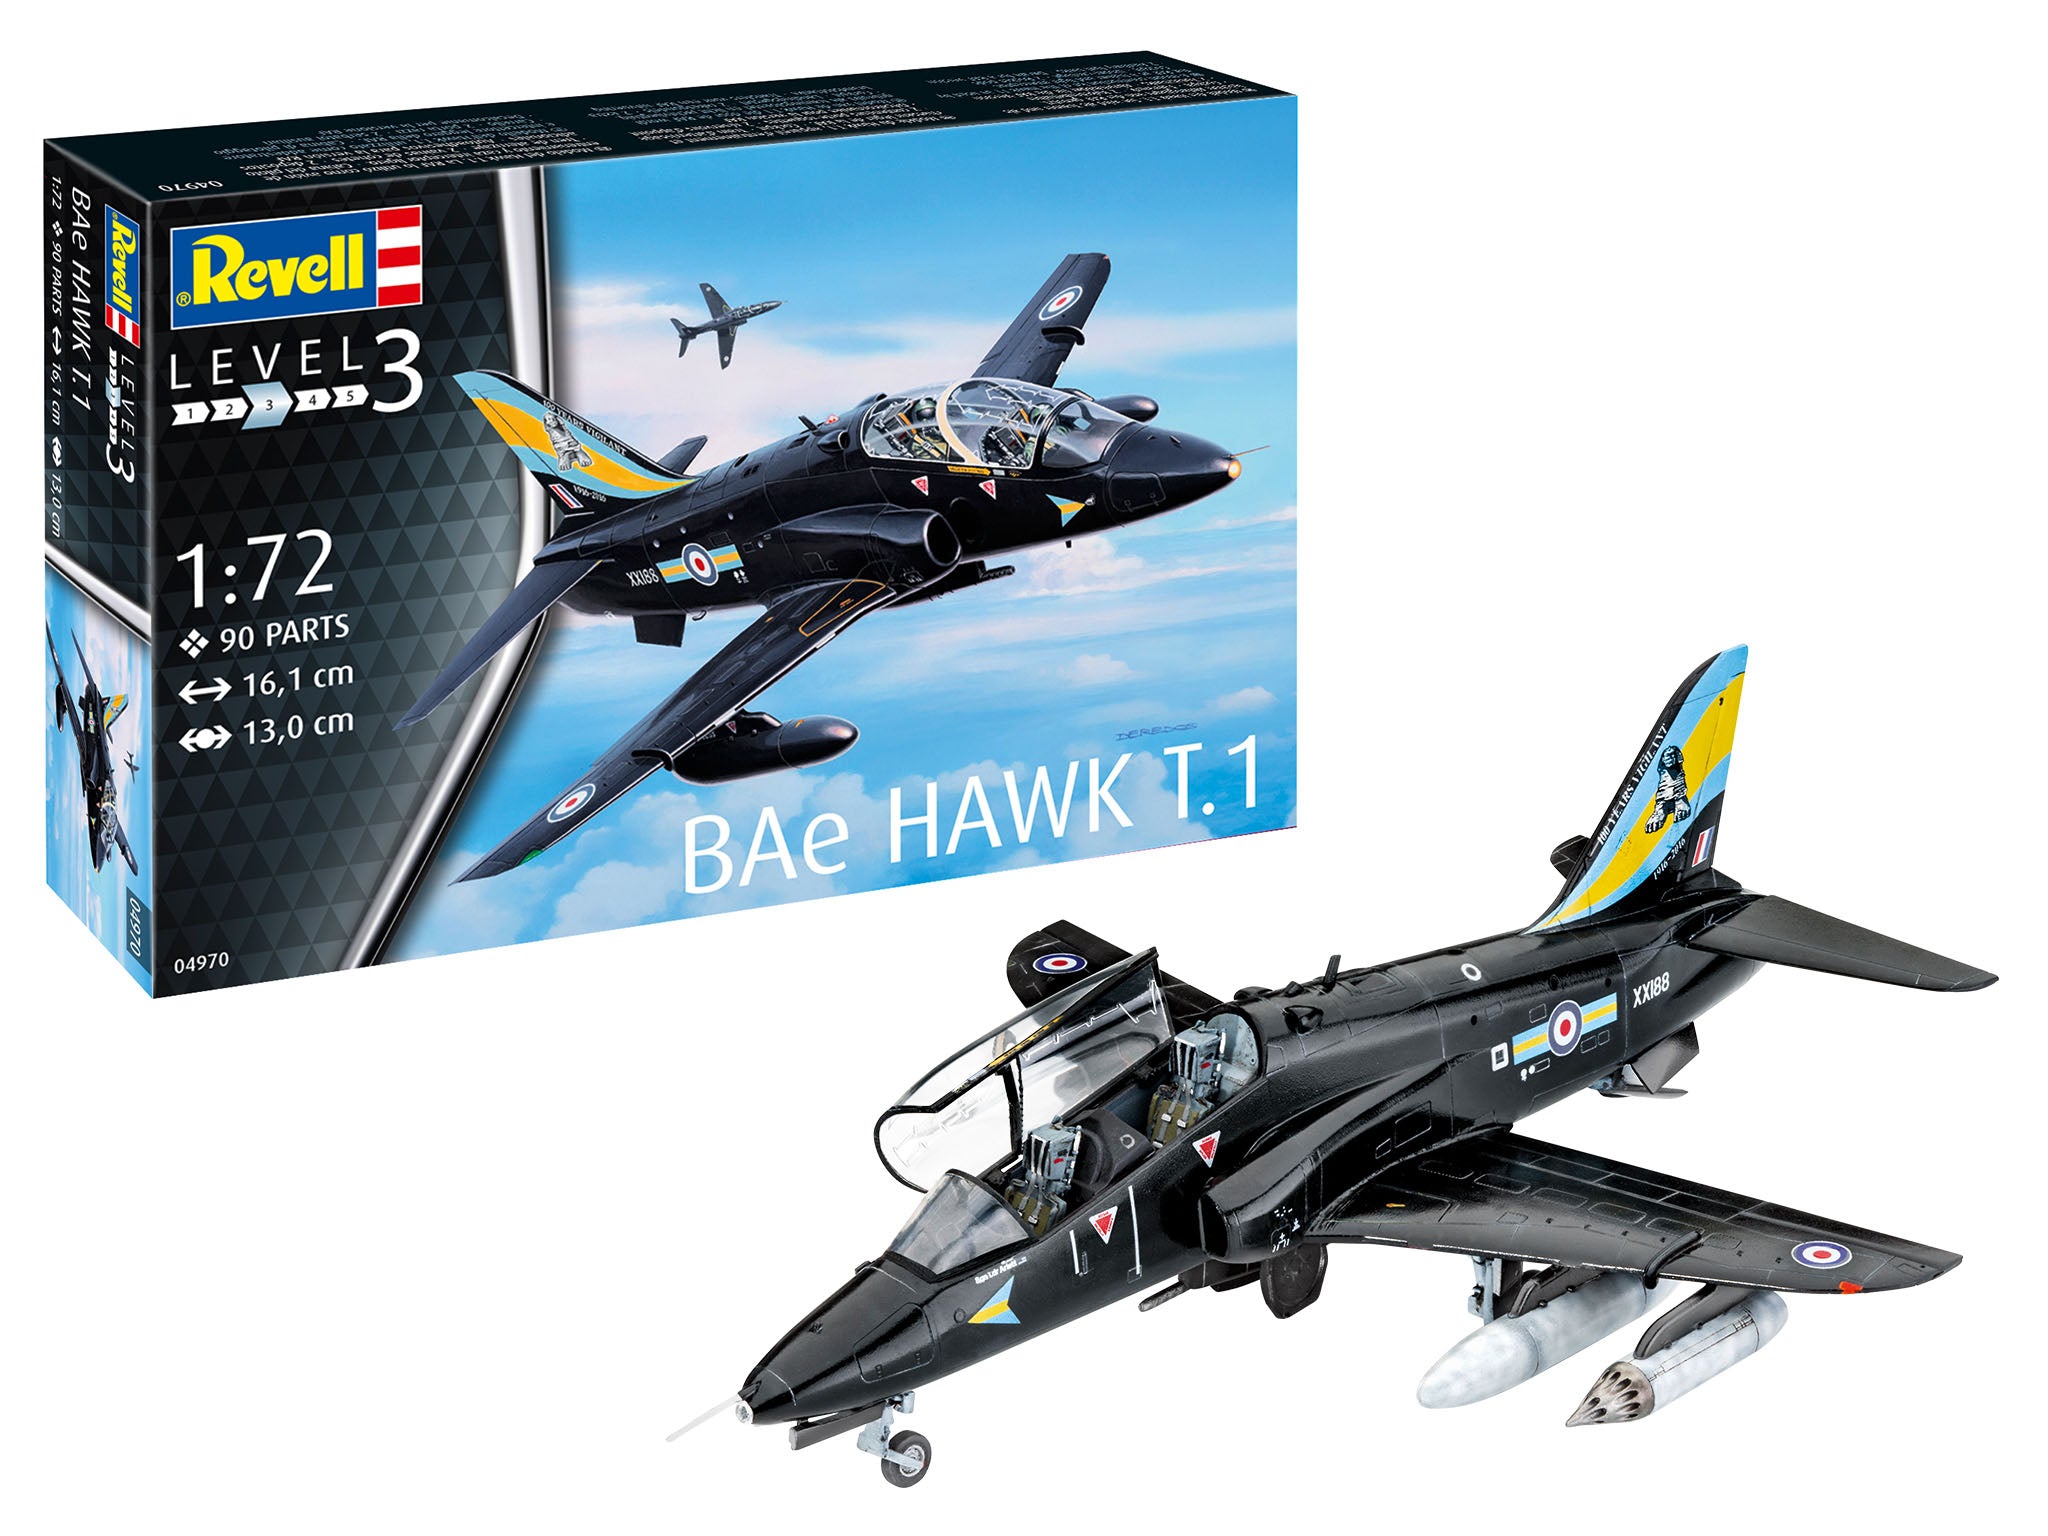 BAe Hawk T.1 1:72 Scale Kit